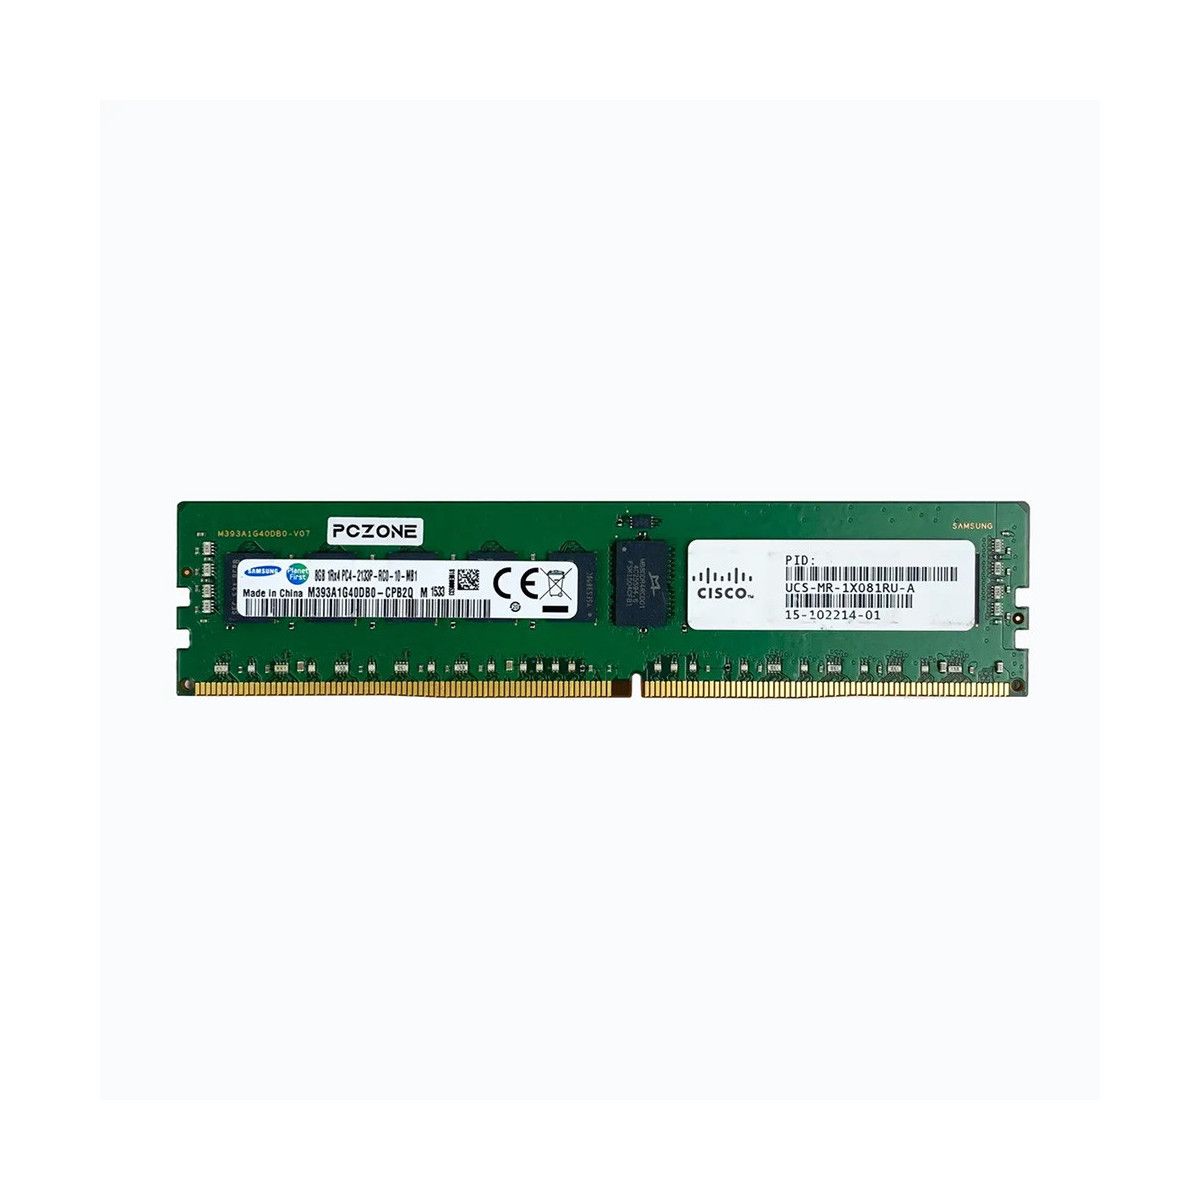 7110308-MS - Memstar 1x 8GB DDR4-2133 RDIMM PC4-17000P-R - Memorie compatibilă Mem-Star OEM 1 - Memstar 